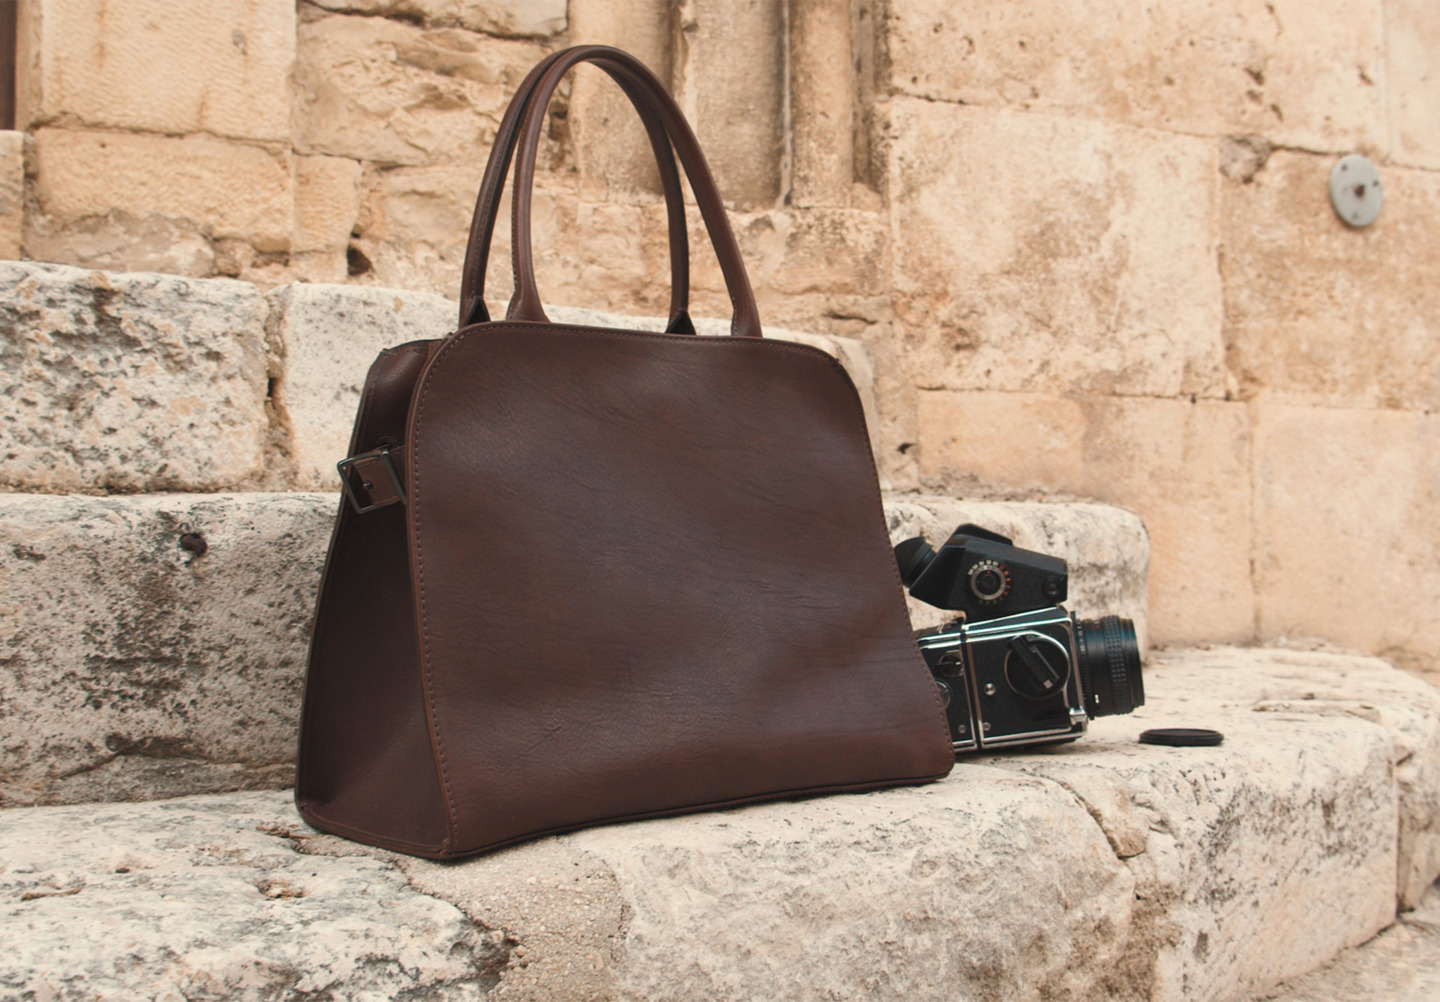 Corîu Italian Leather Handbag posed with Medium Format Film Camera on Steps